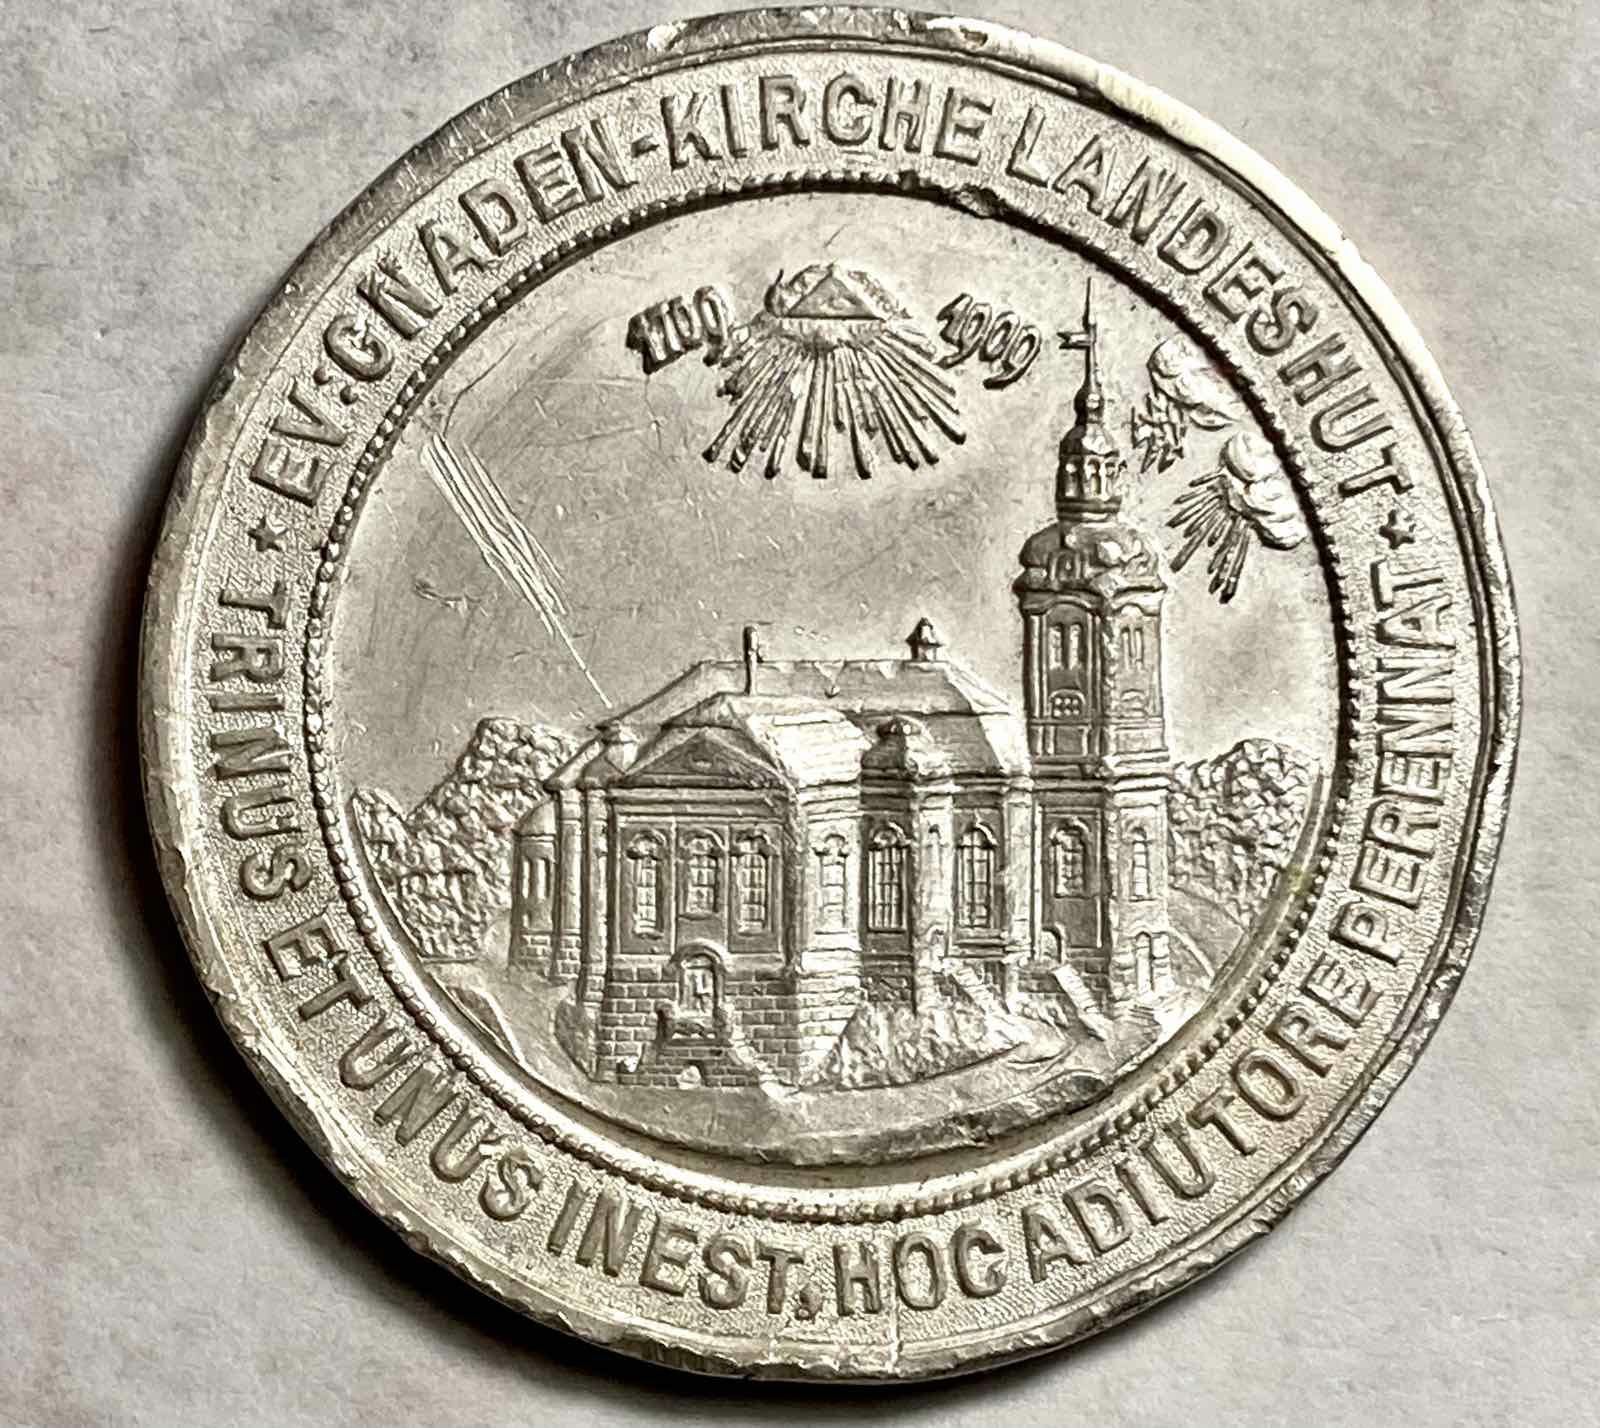 Продам Памятную медаль 200 лет династии WILHELM,Cеребро 900 пр, 15.42г